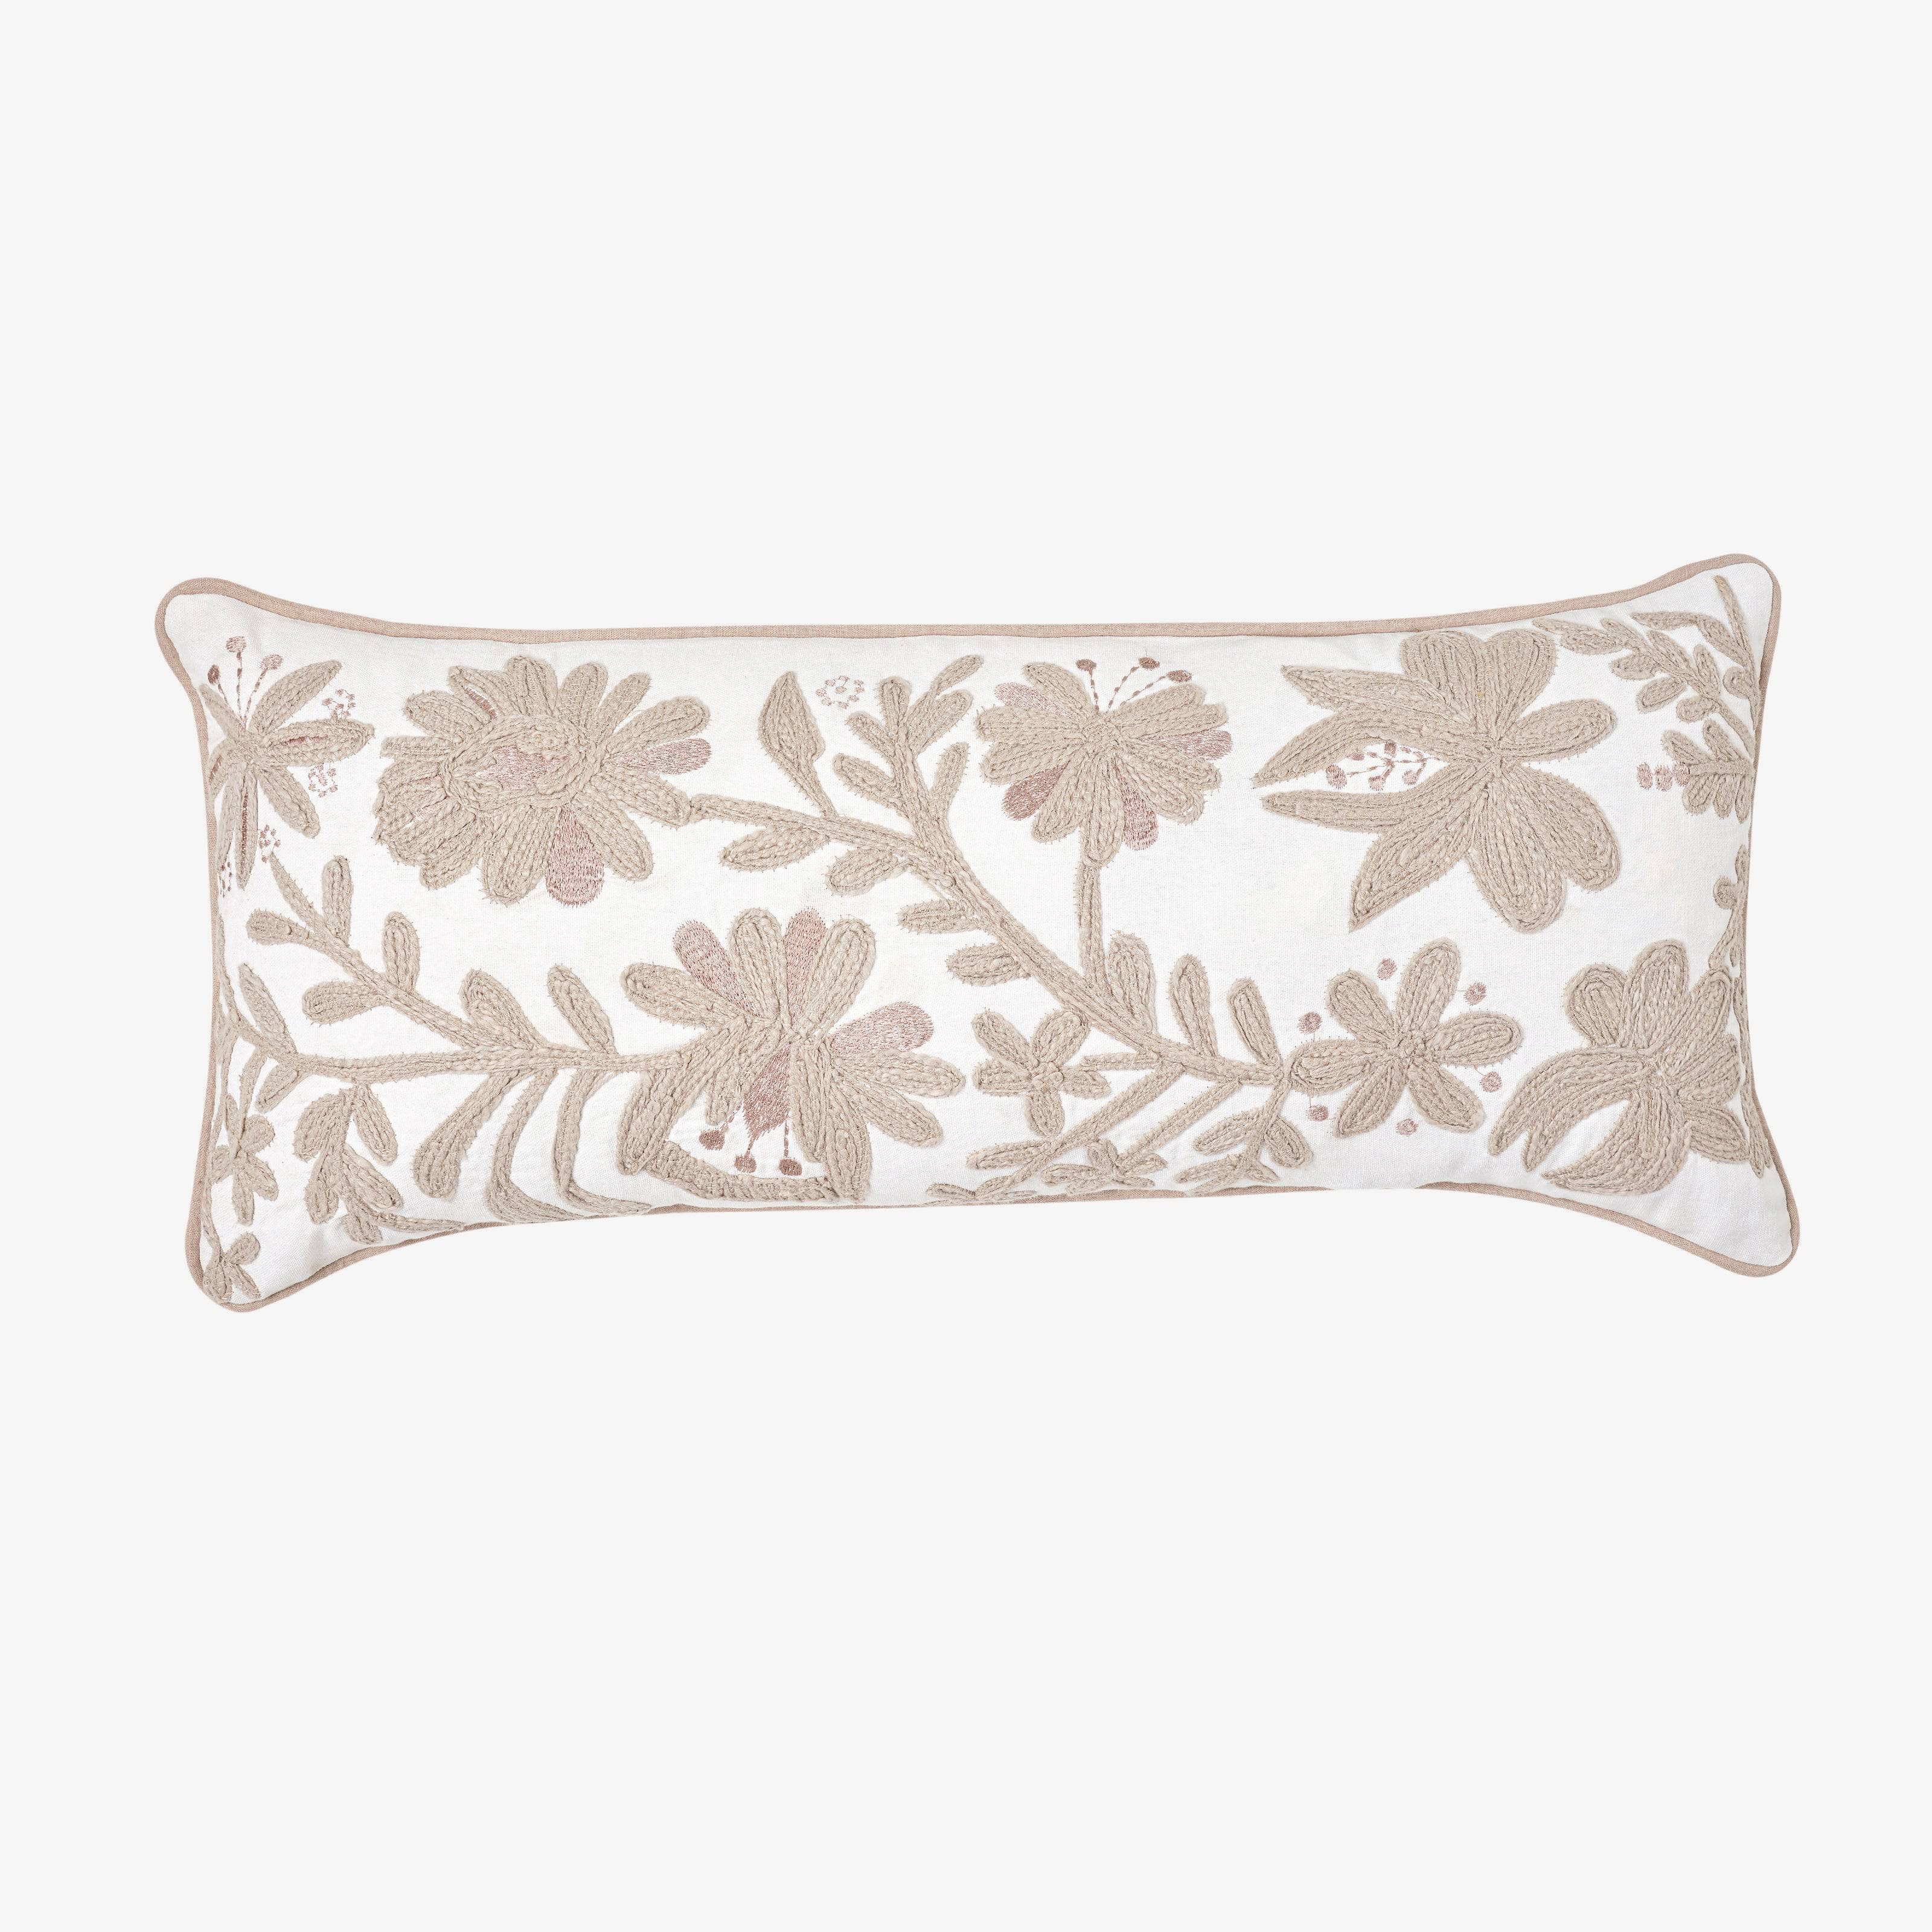 Flynn Flower Cushion Cover, Natural, 30x70 cm 1